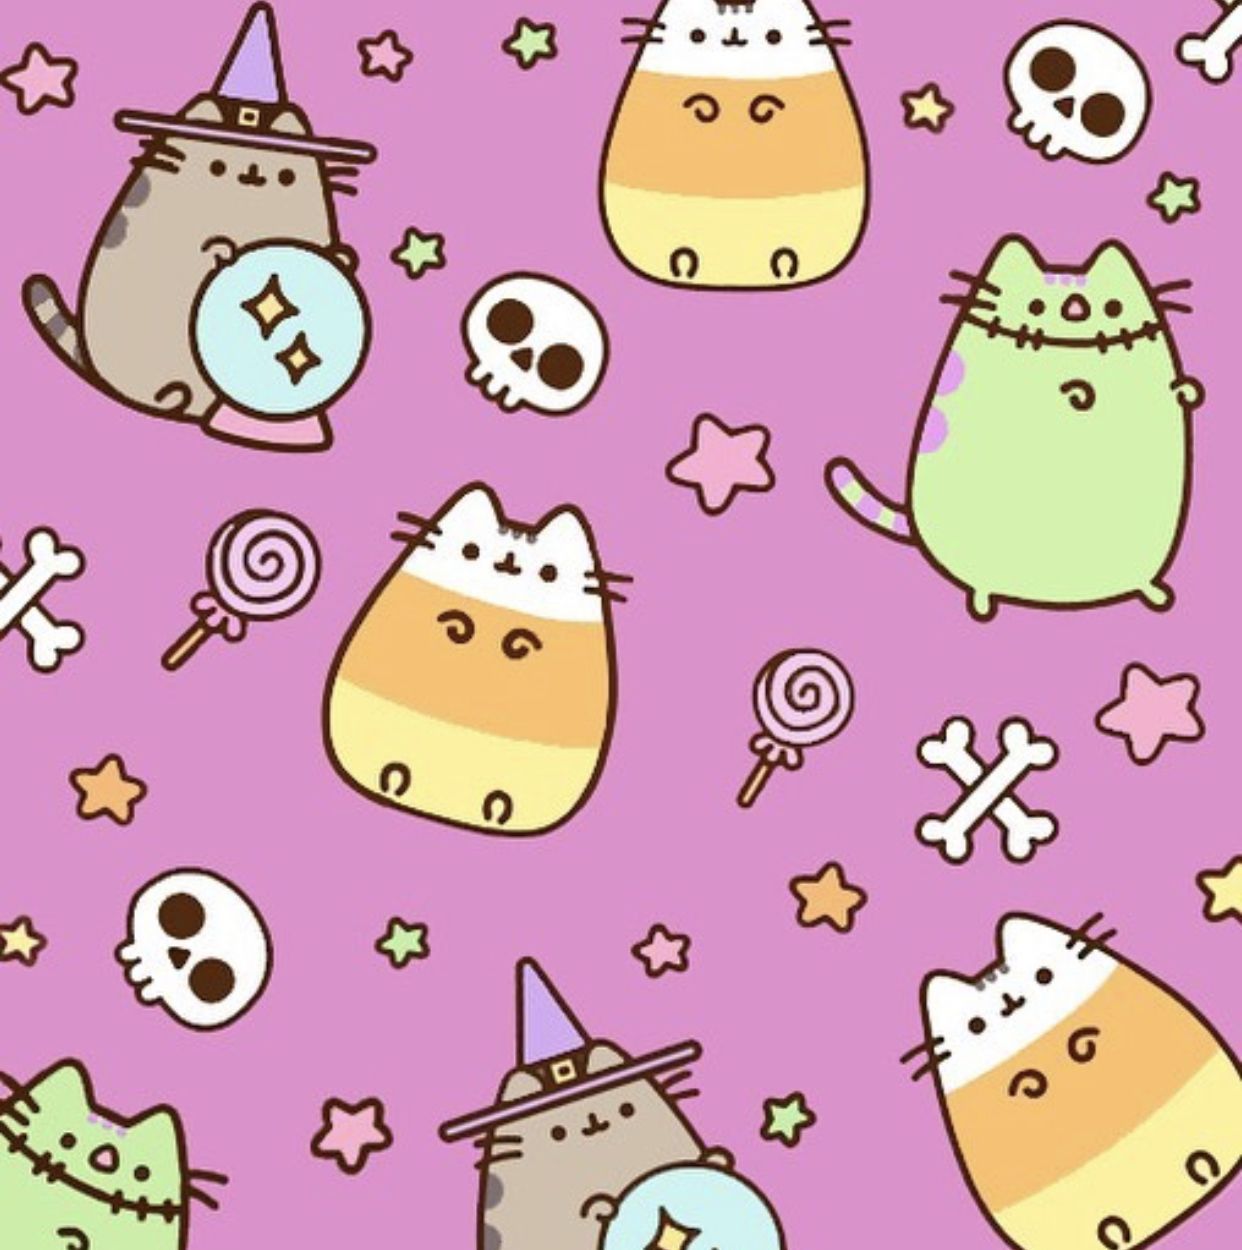 Halloween Pusheen Cat Wallpapers - Wallpaper Cave